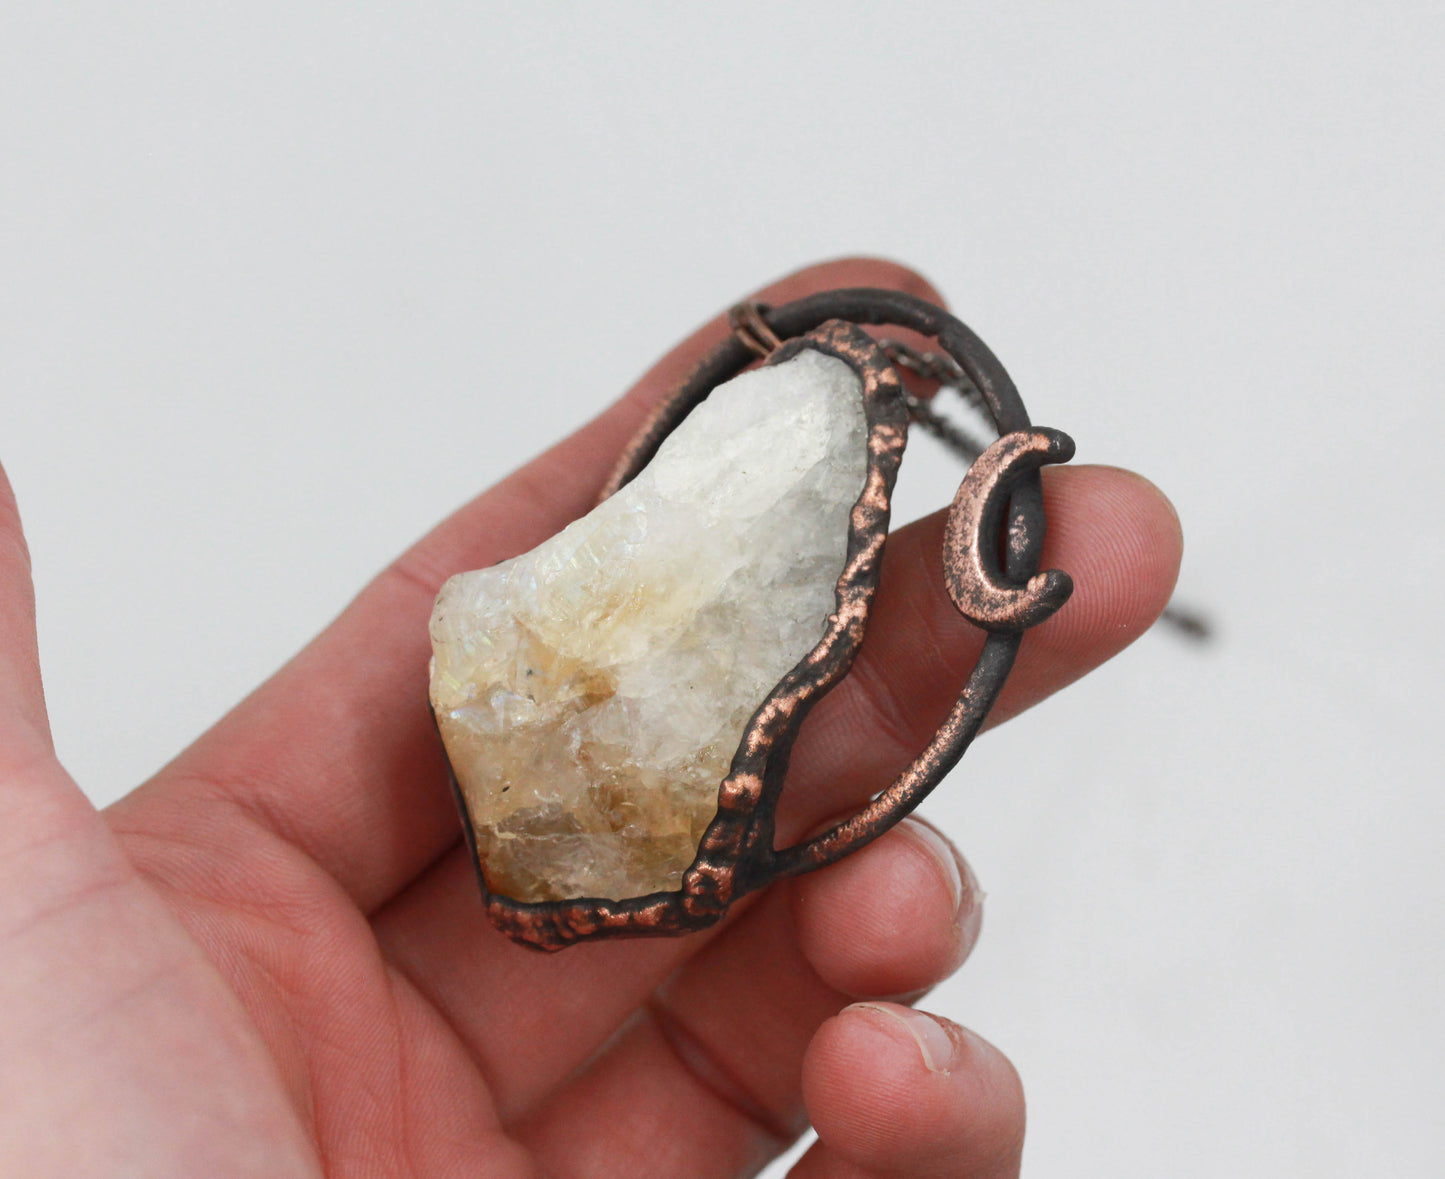 Aura Citrine Crystal Moon Necklace